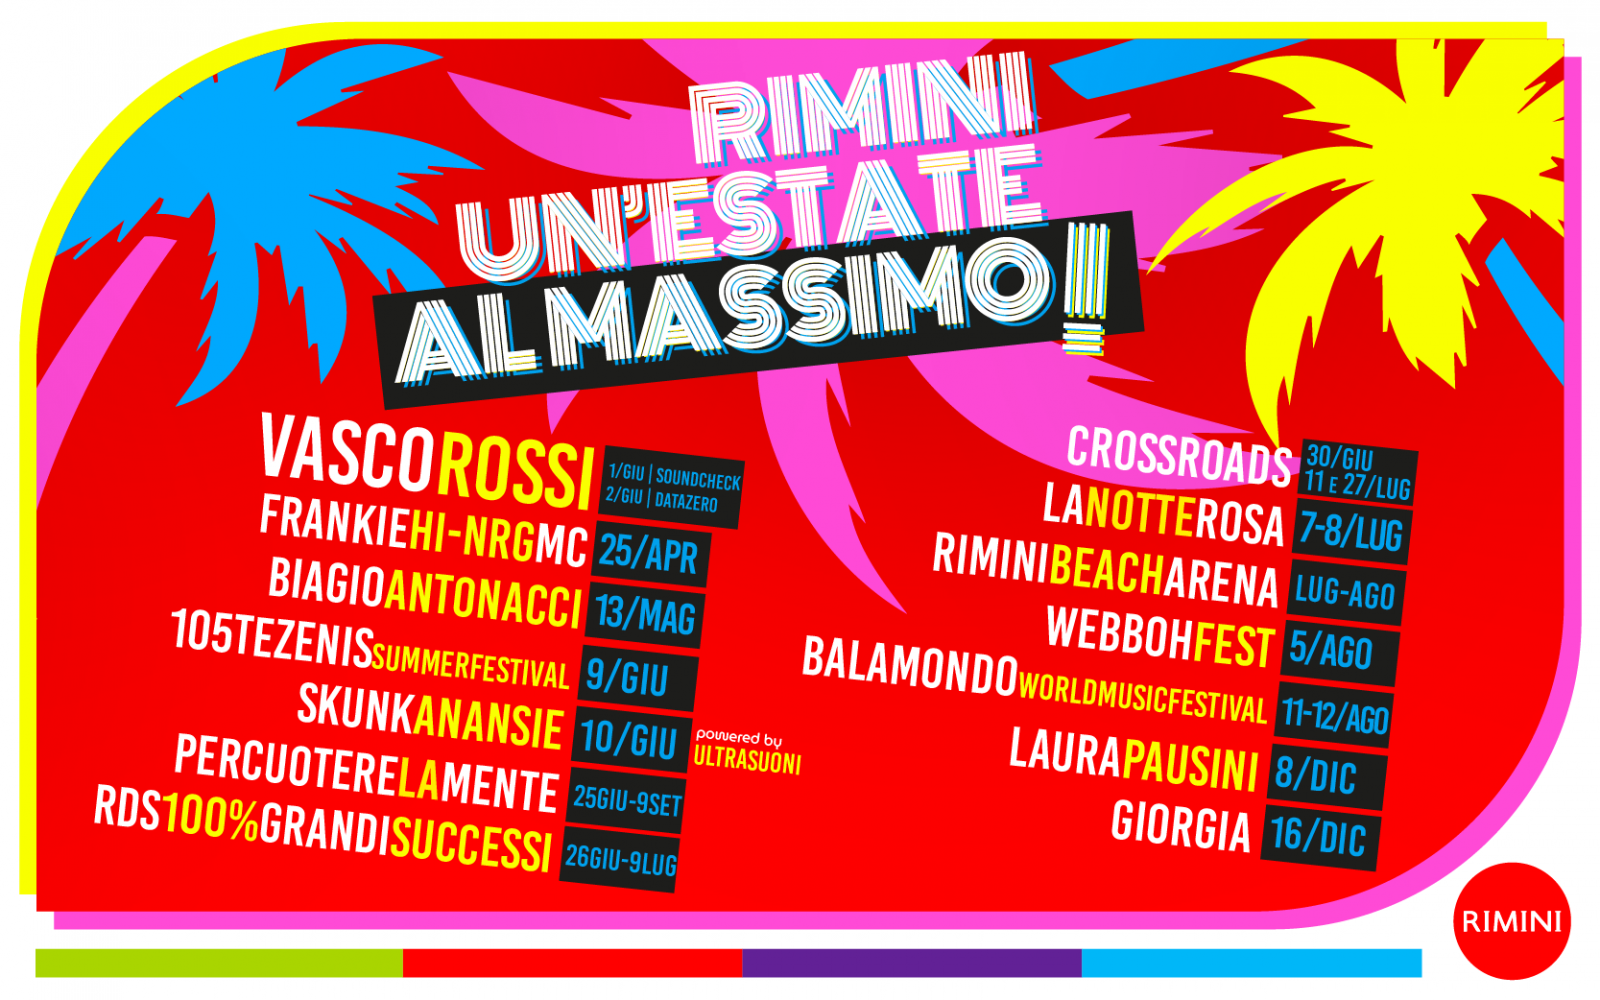 Rimini, un'estate al massimo!